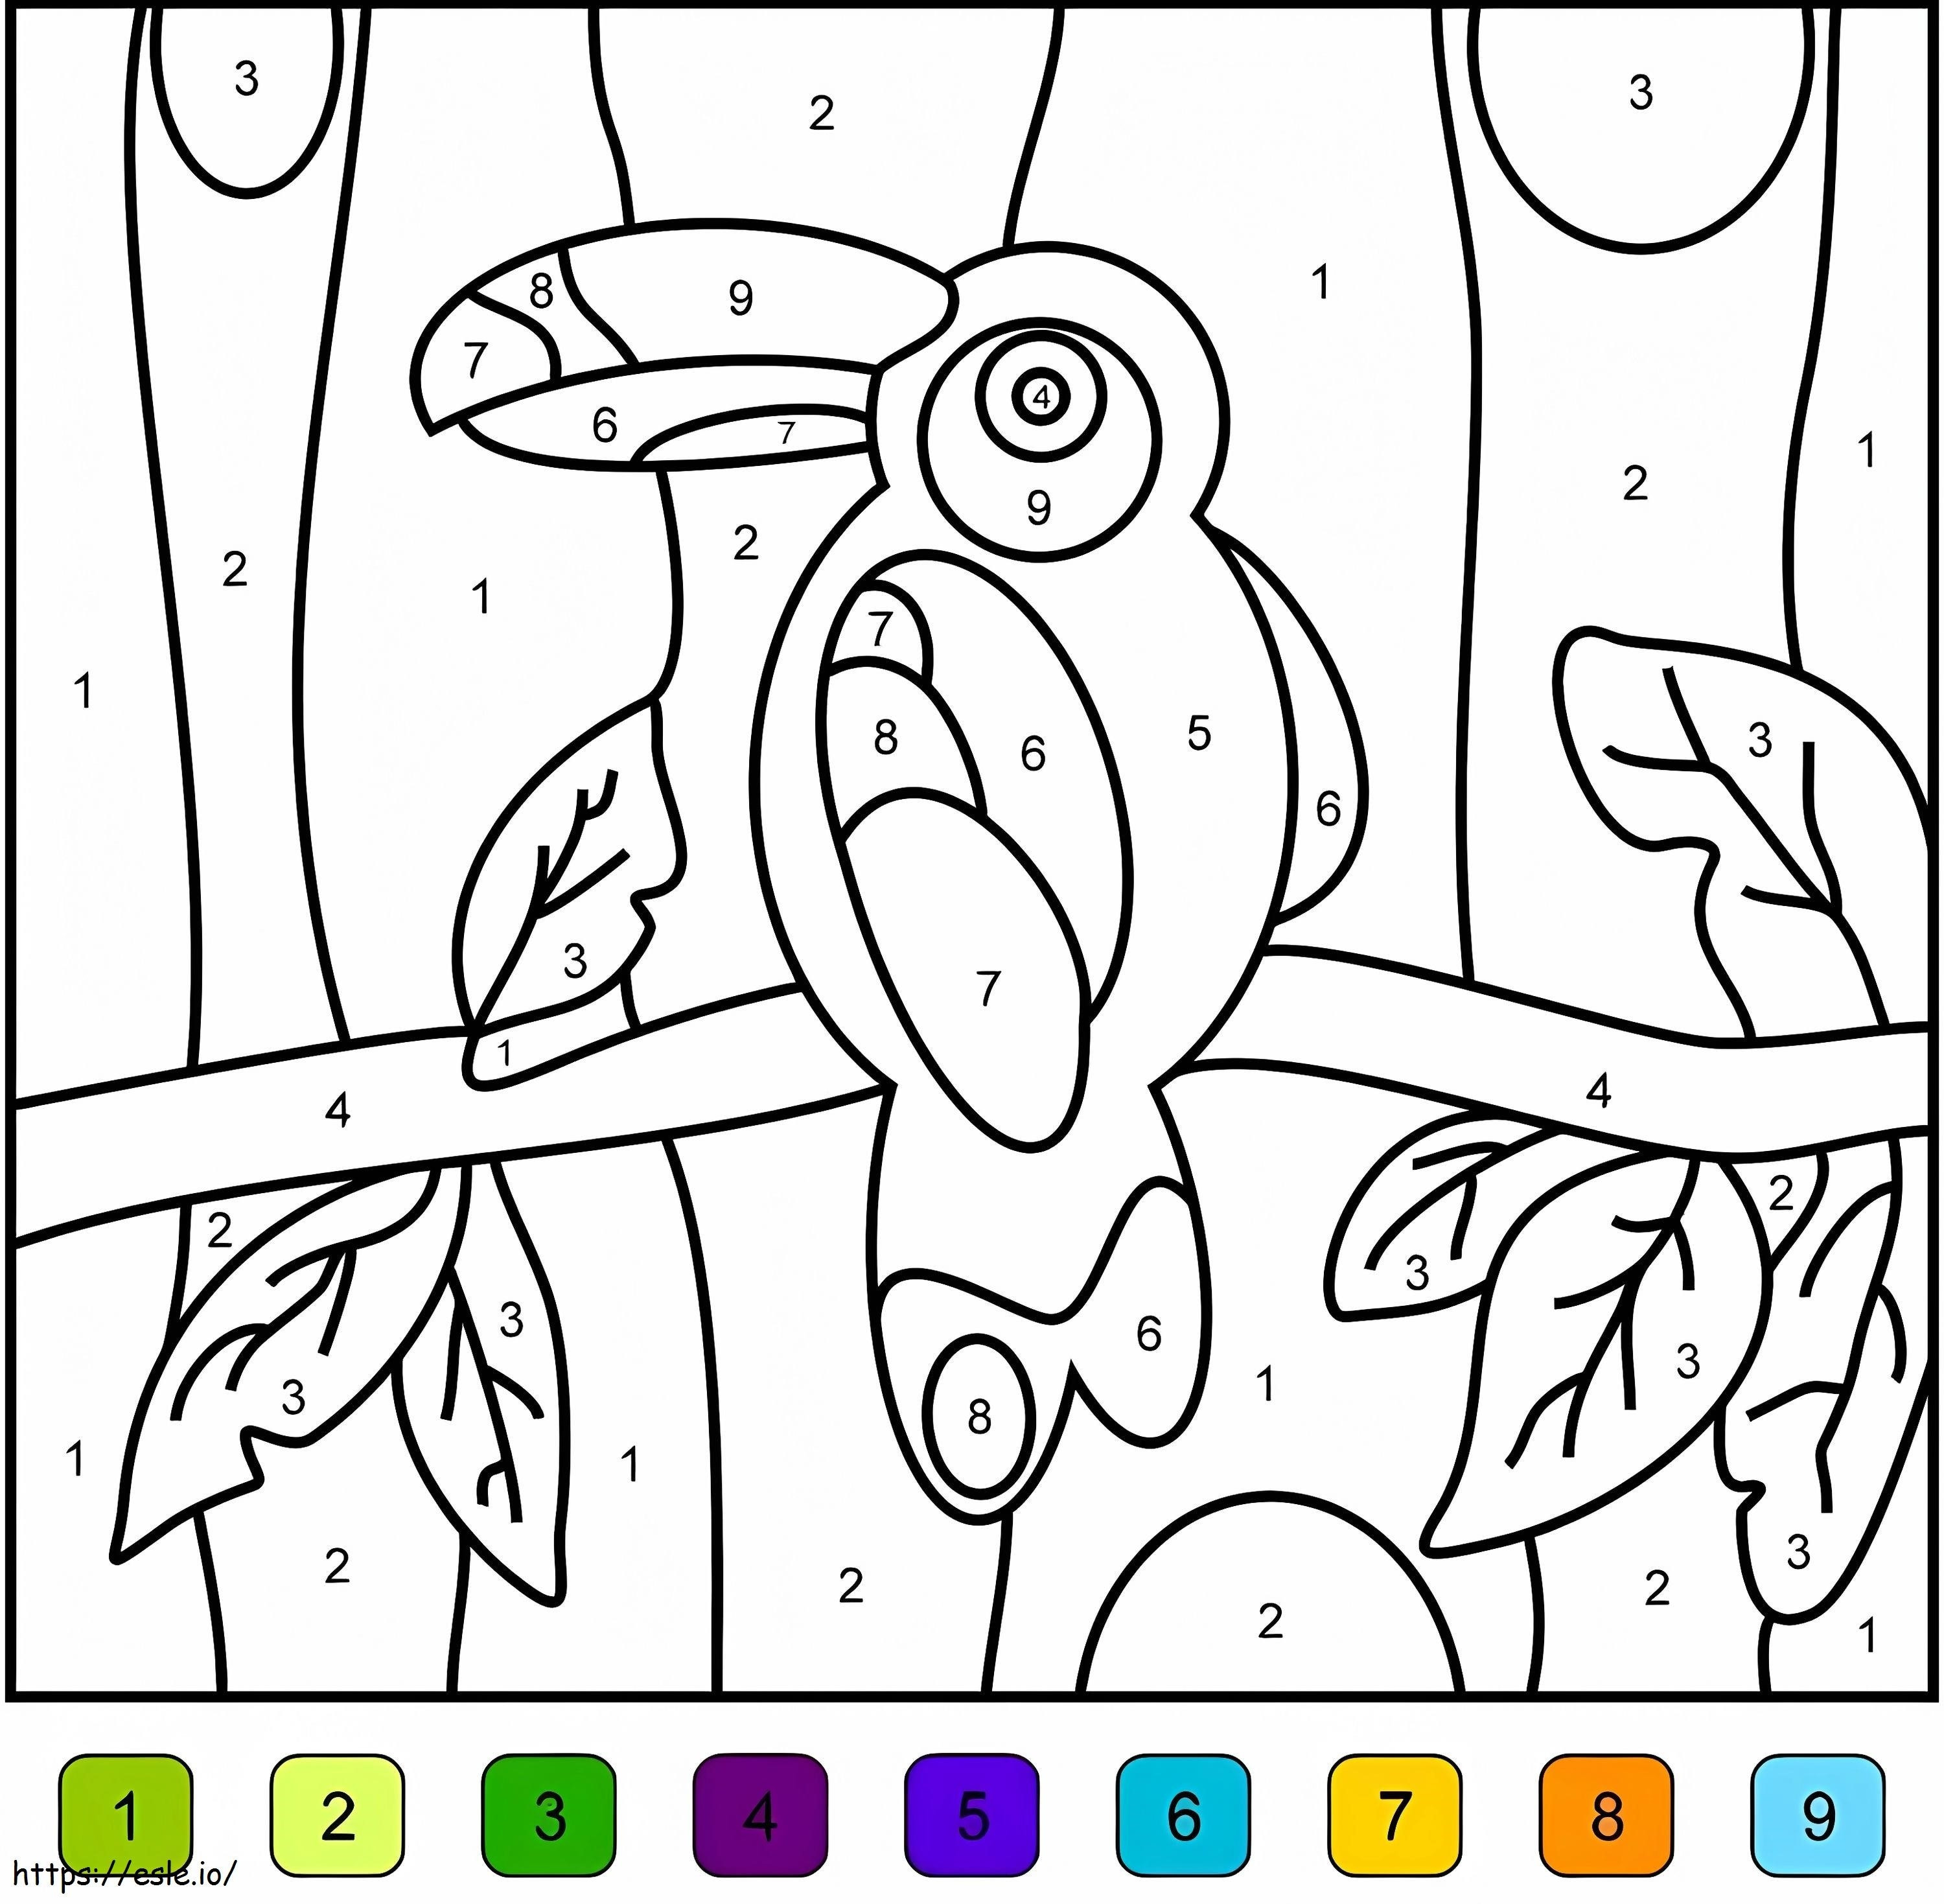 Cor do tucano por número para colorir